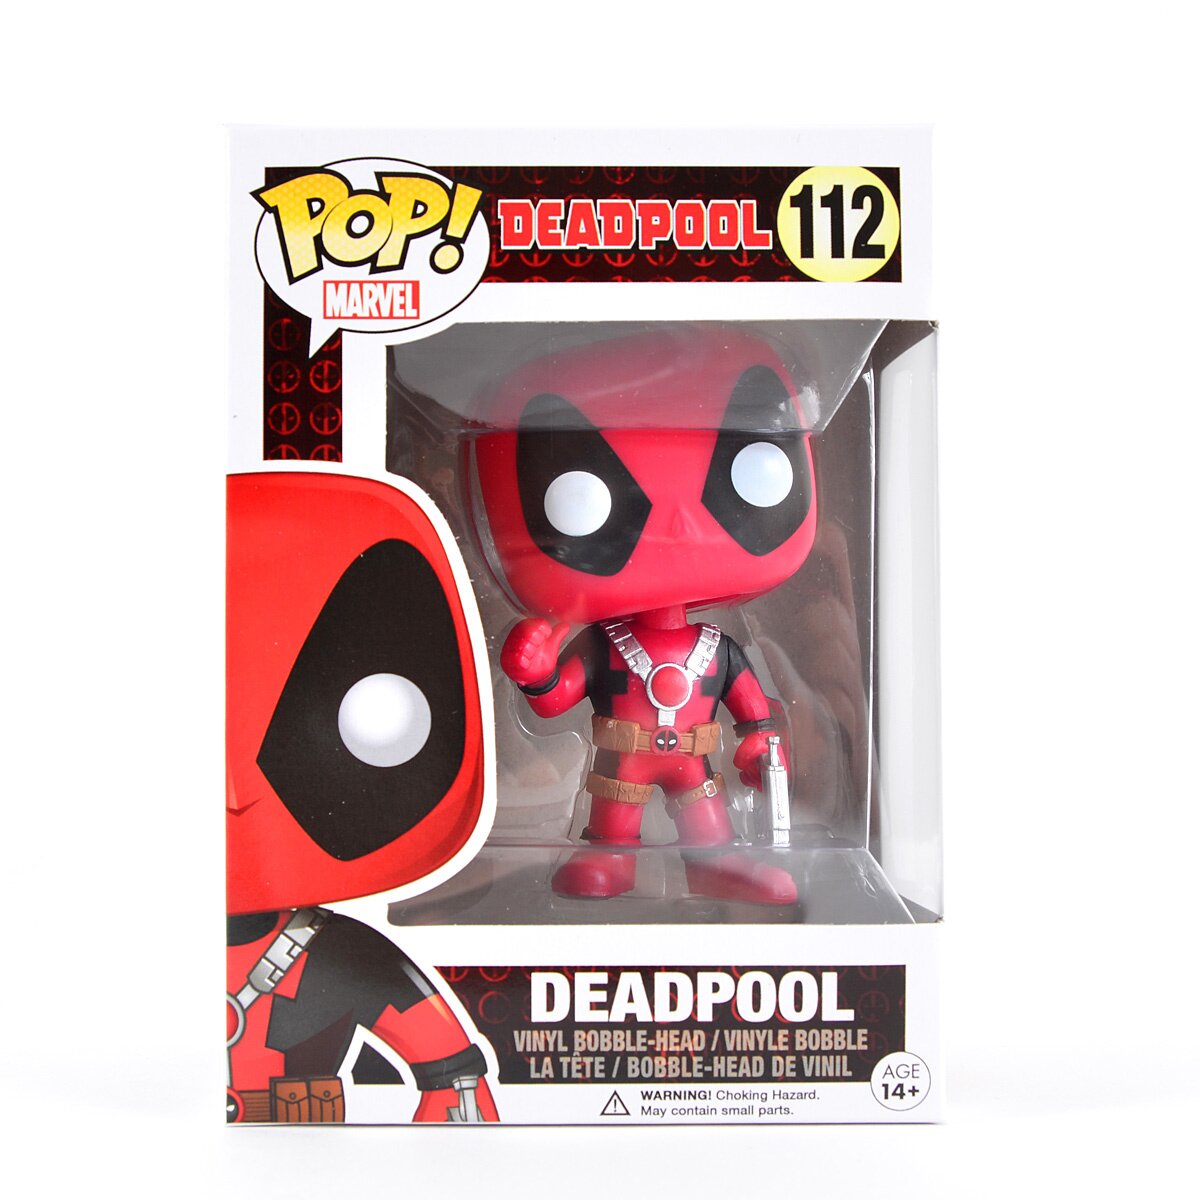 Funko POP! Marvel - Deadpool - Deadpool (Thumb Up) (112)